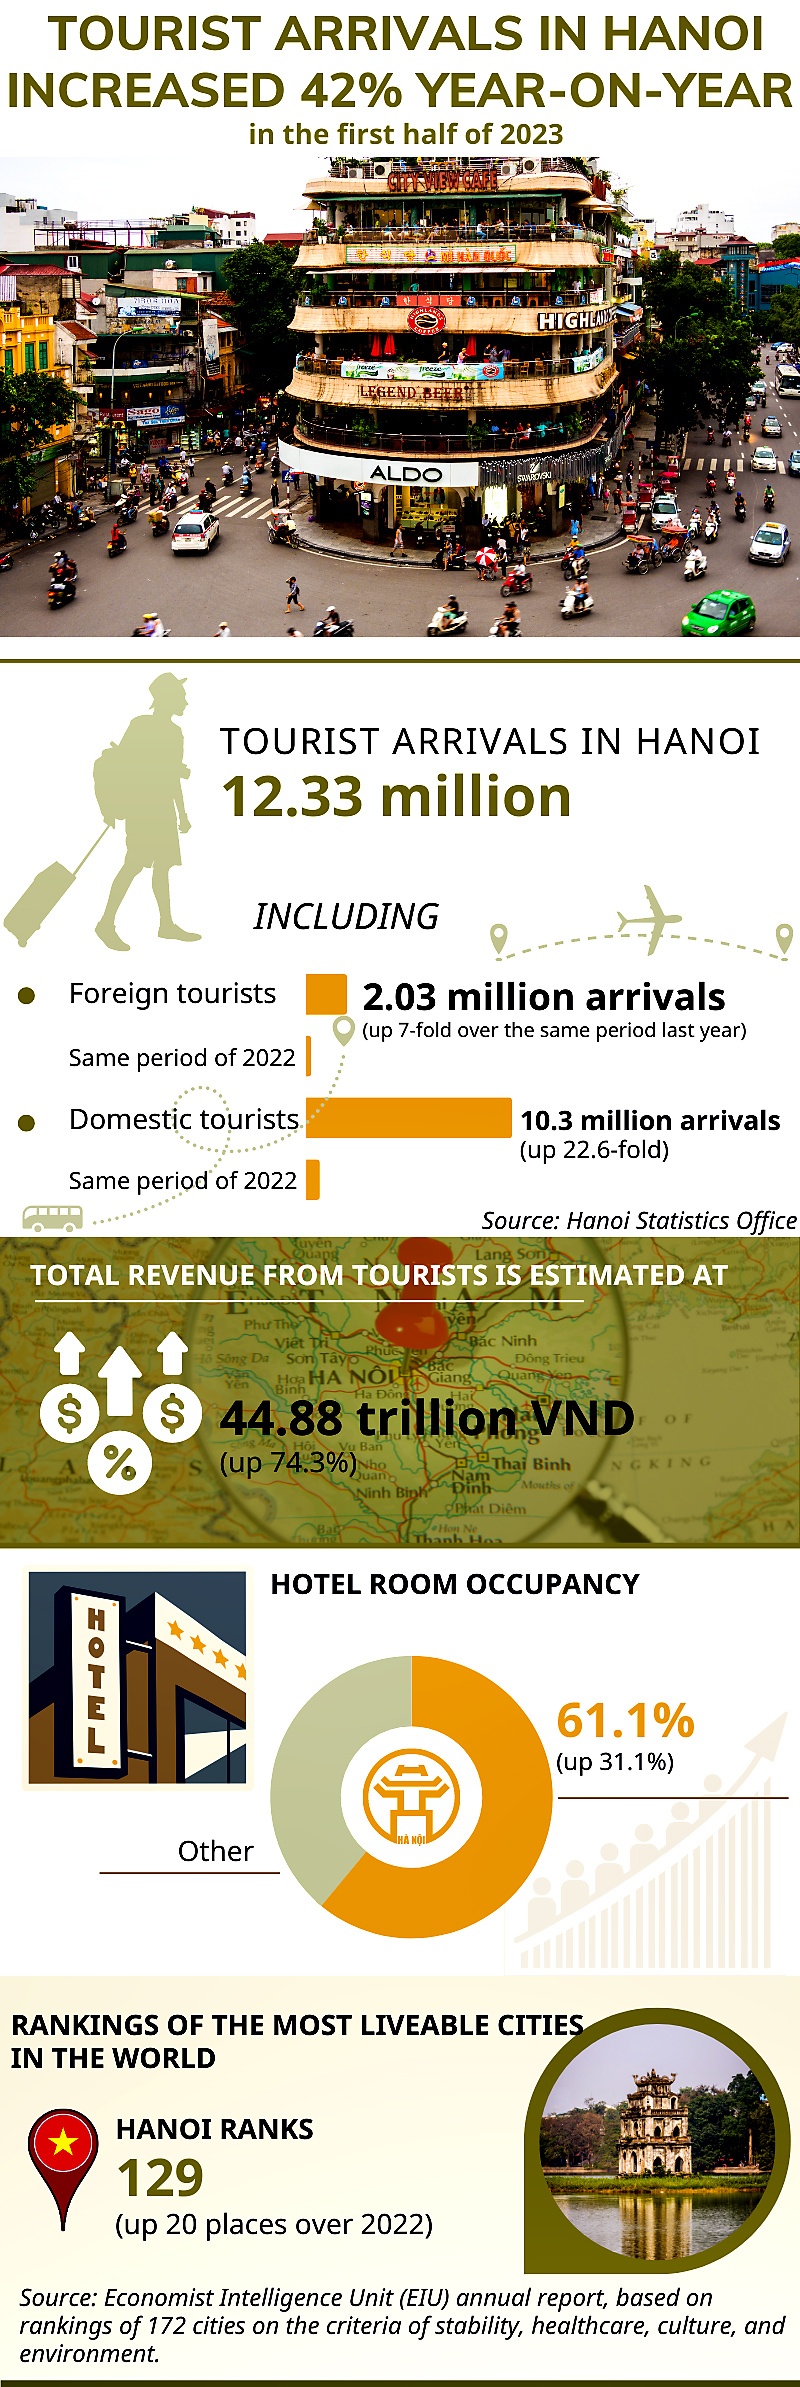 Tourist arrivals in Hanoi reach 12.33 mln in first half